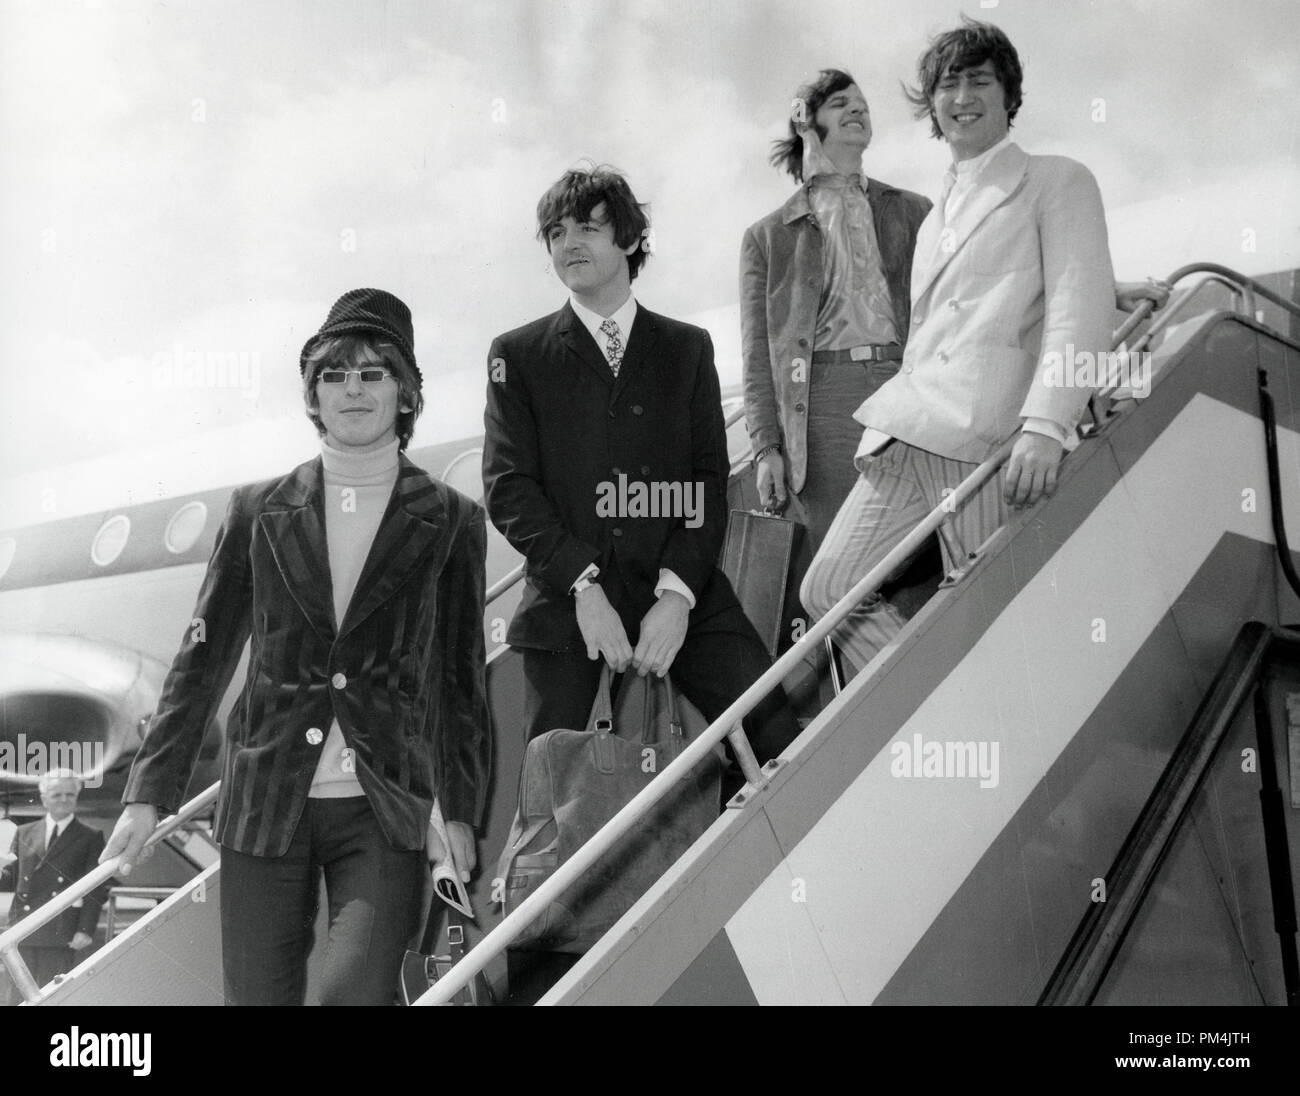 Beatles George Harrison, Paul McCartney, Anello Starr e John Lennon all'Aeroporto di Londra. Giugno 23,1966. Riferimento al file #1013_045 THA © CCR /Hollywood Archivio - Tutti i diritti riservati. Foto Stock